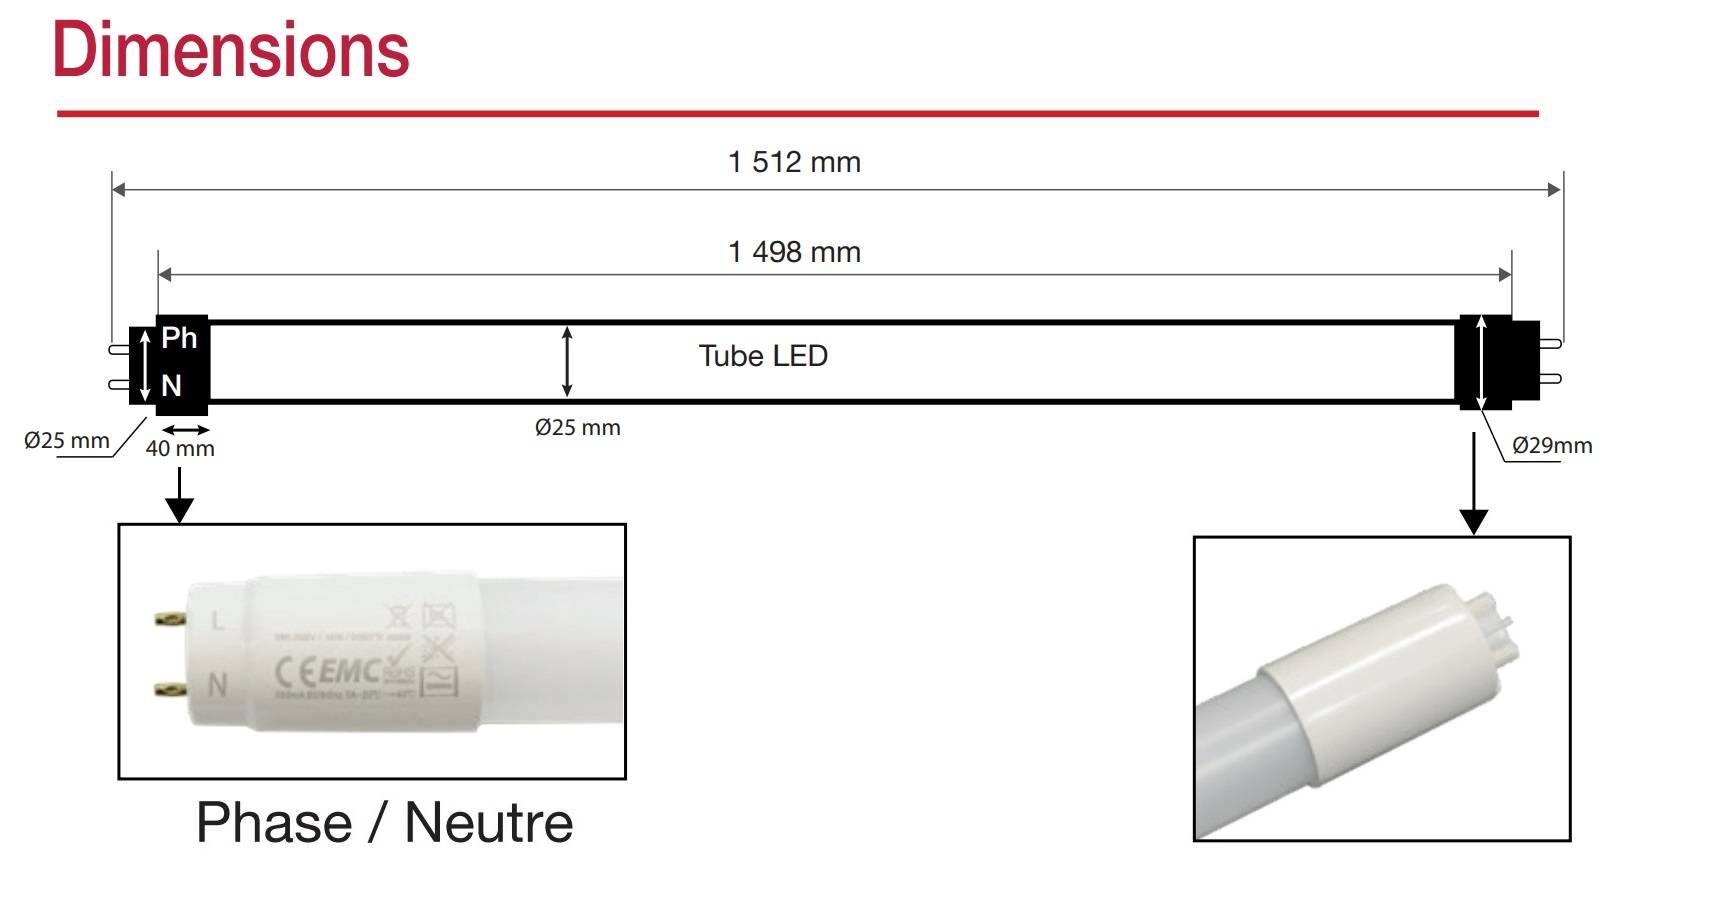 Guirlande lumineuse étanche à tubes LED, 150 LED, fonctionnement à